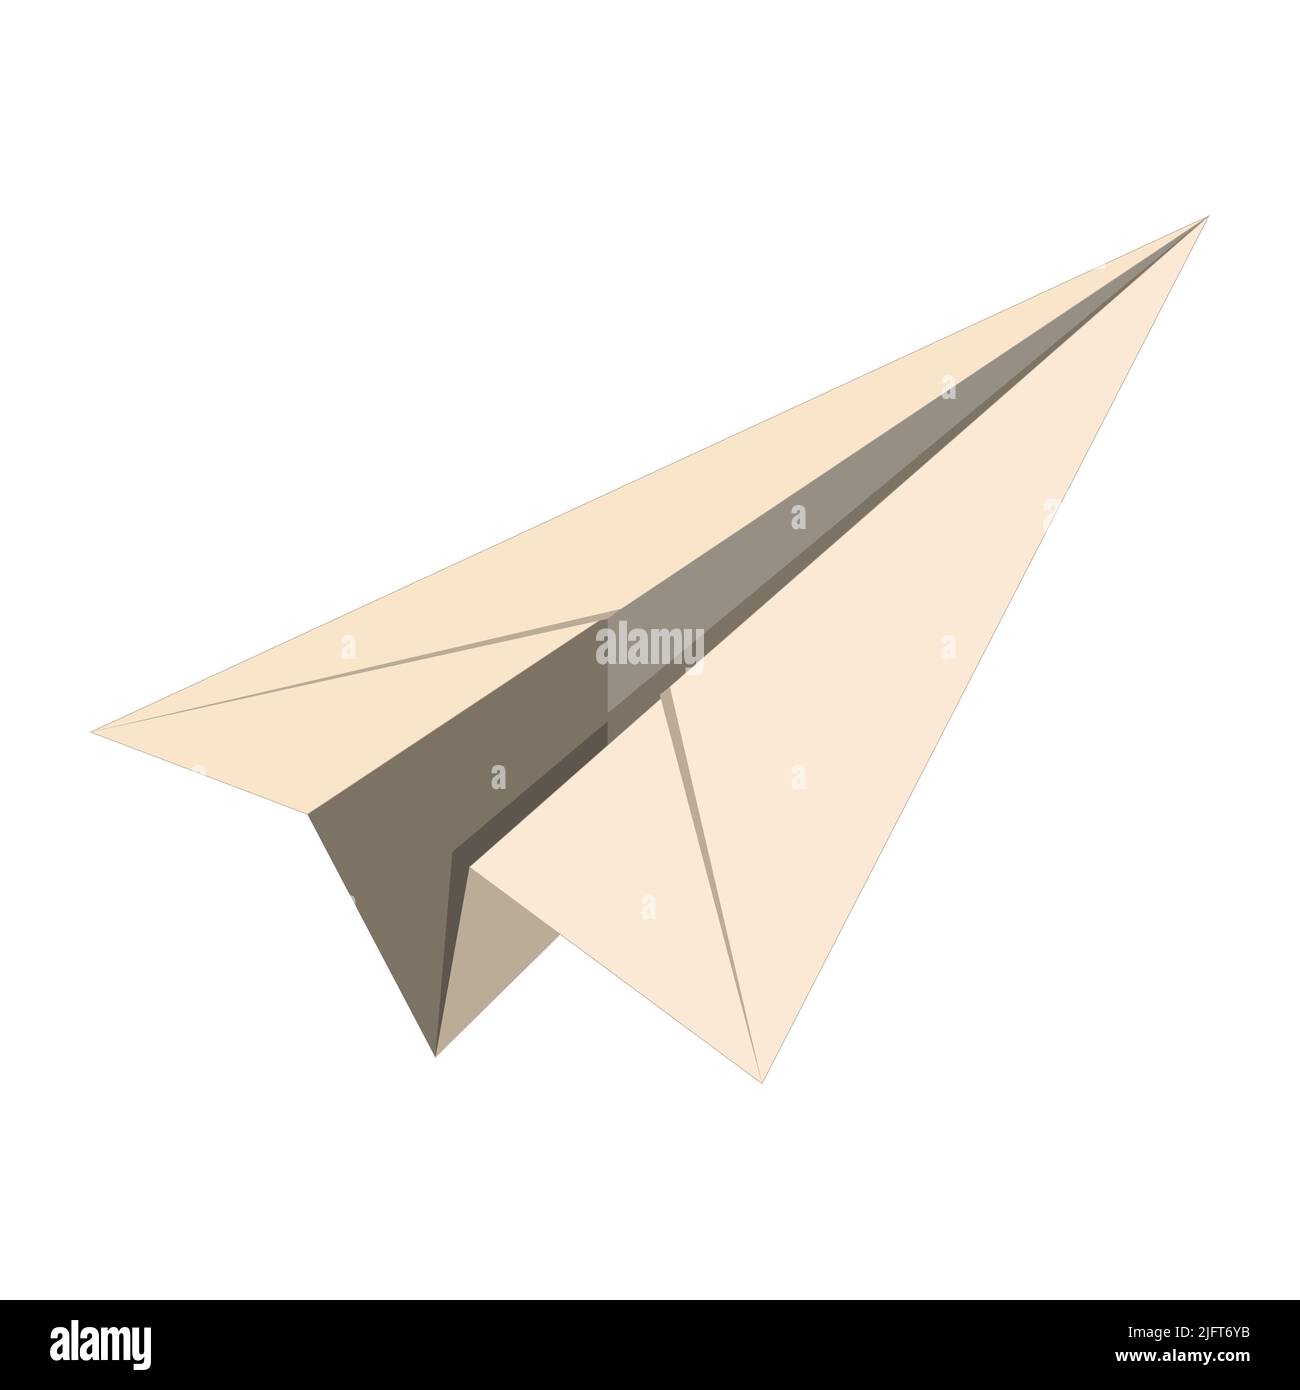 Origami Papier Flugzeug. Vektordarstellung der Papierebene isoliert auf Weiß Stock Vektor